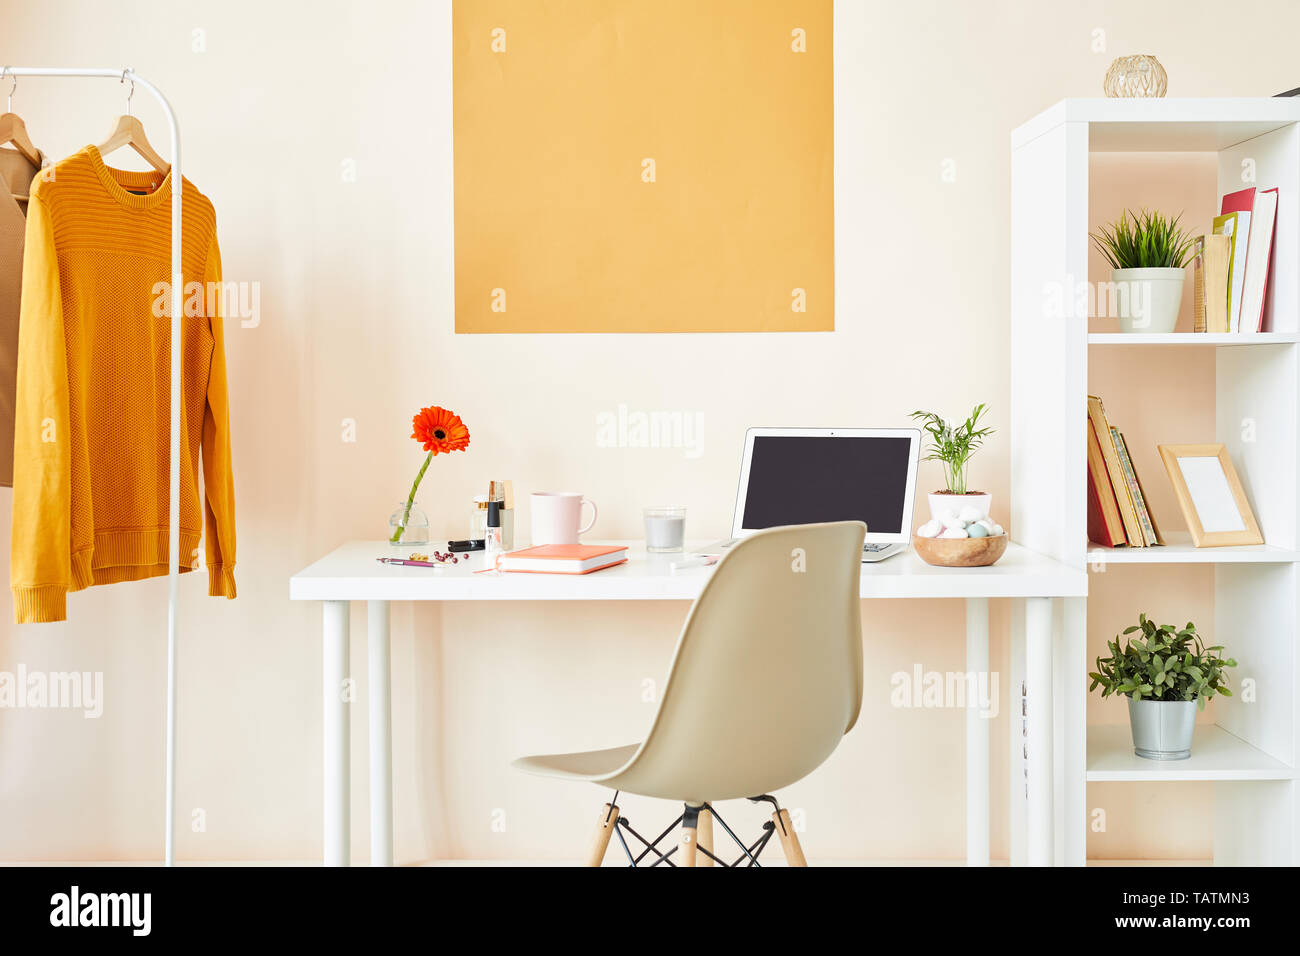 Arbeitsplatz für kreative Mitarbeiter oder Designer mit Schreibtisch, an der Wand, weiß Stuhl, Möbel mit Material- und Casualwear auf Kleiderbügeln Stockfoto